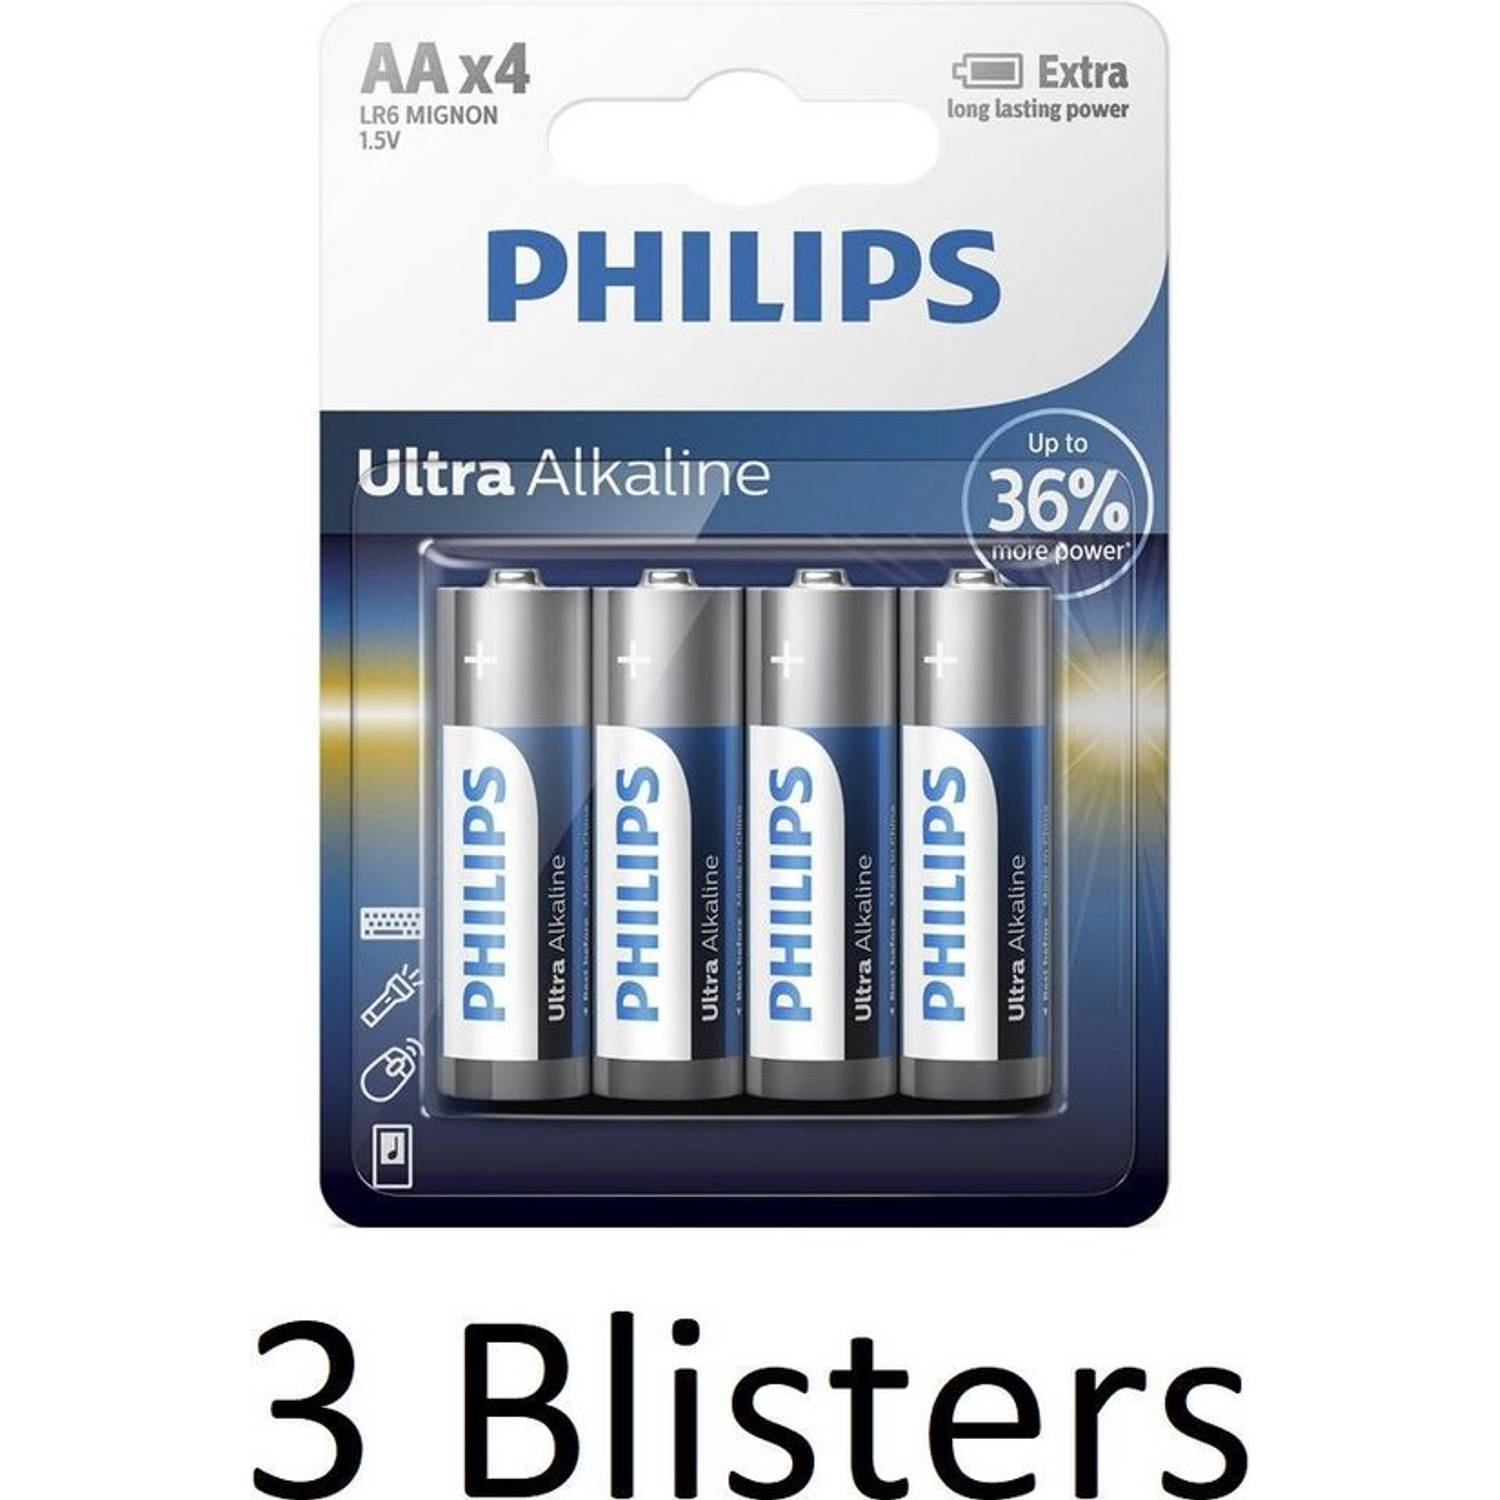 12 Stuks (3 Blisters a 4 st) Philips Ultra Alkaline AA Batterijen